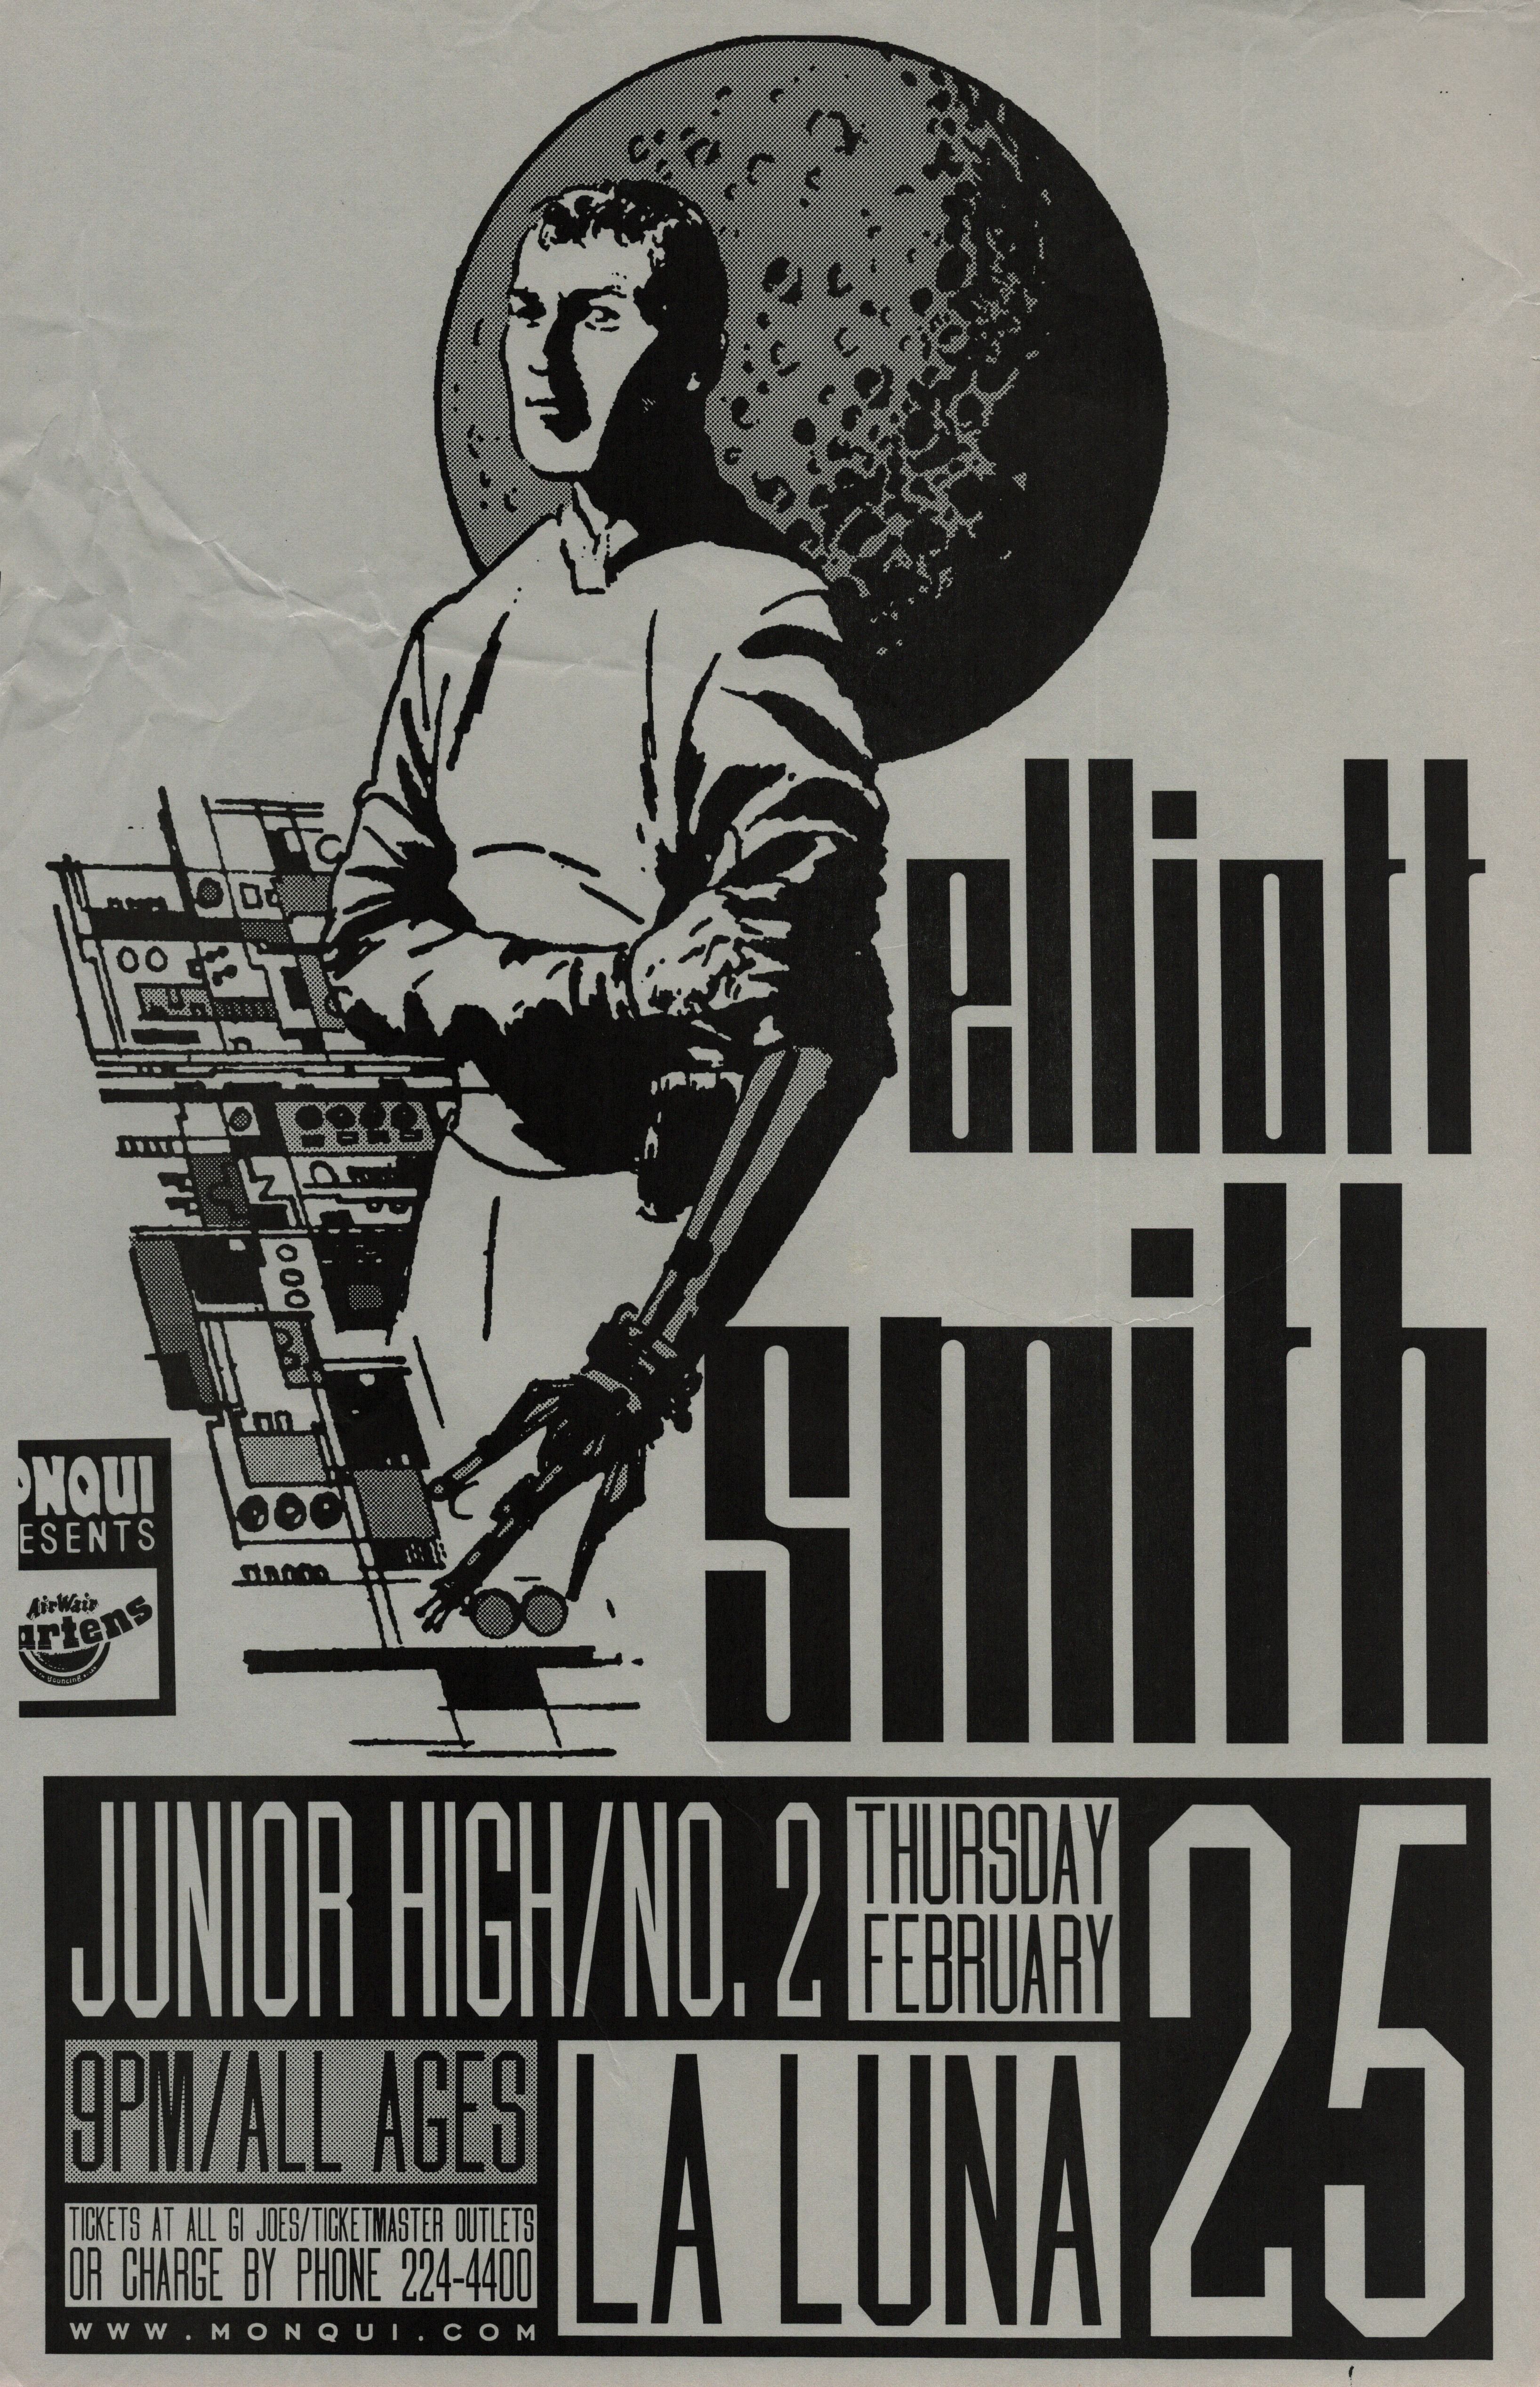 MXP-203.1 Elliott Smith 1999 La Luna  Feb 25 Concert Poster